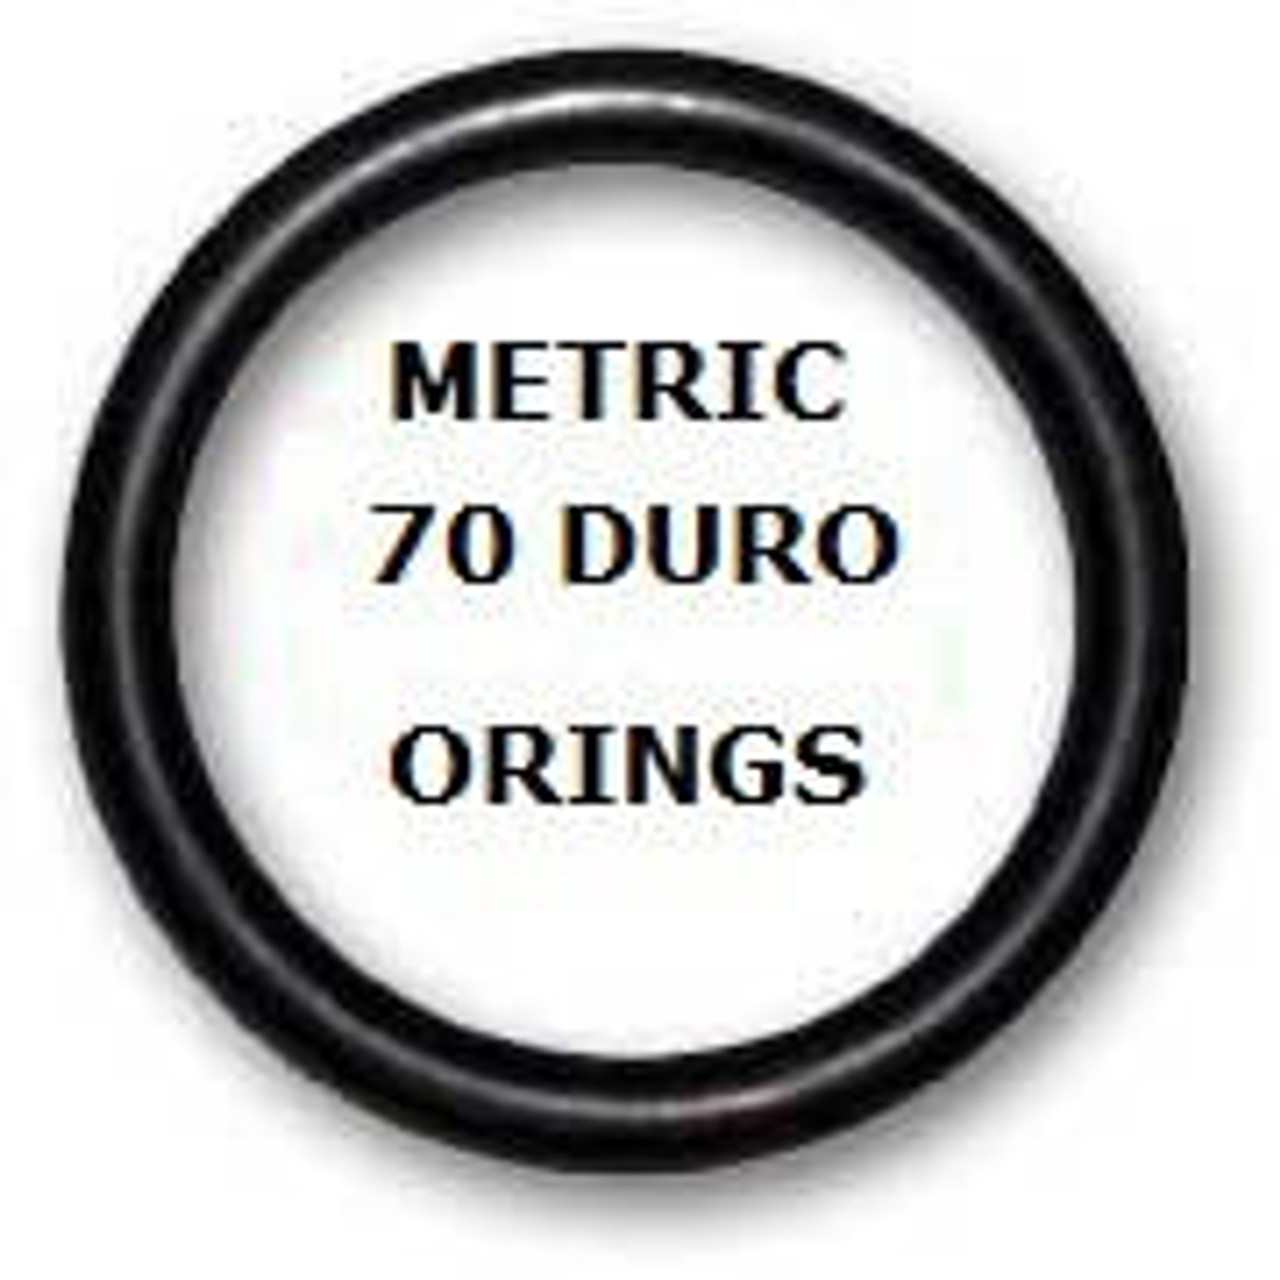 Metric Buna  O-rings 44.04 x 3.53mm  Minimum 10 pcs